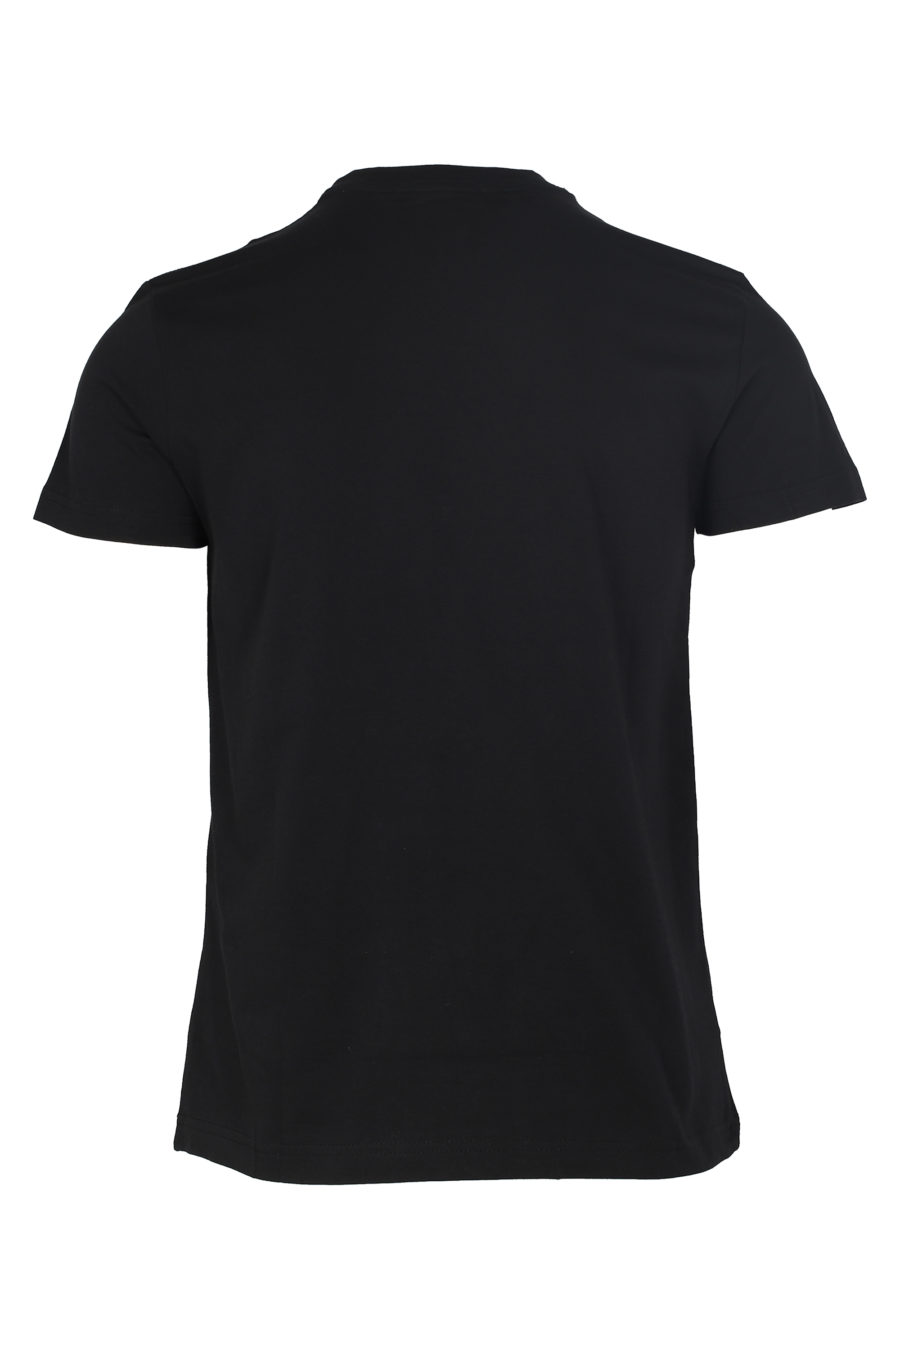 T-shirt noir avec logo rond argenté - IMG 6027